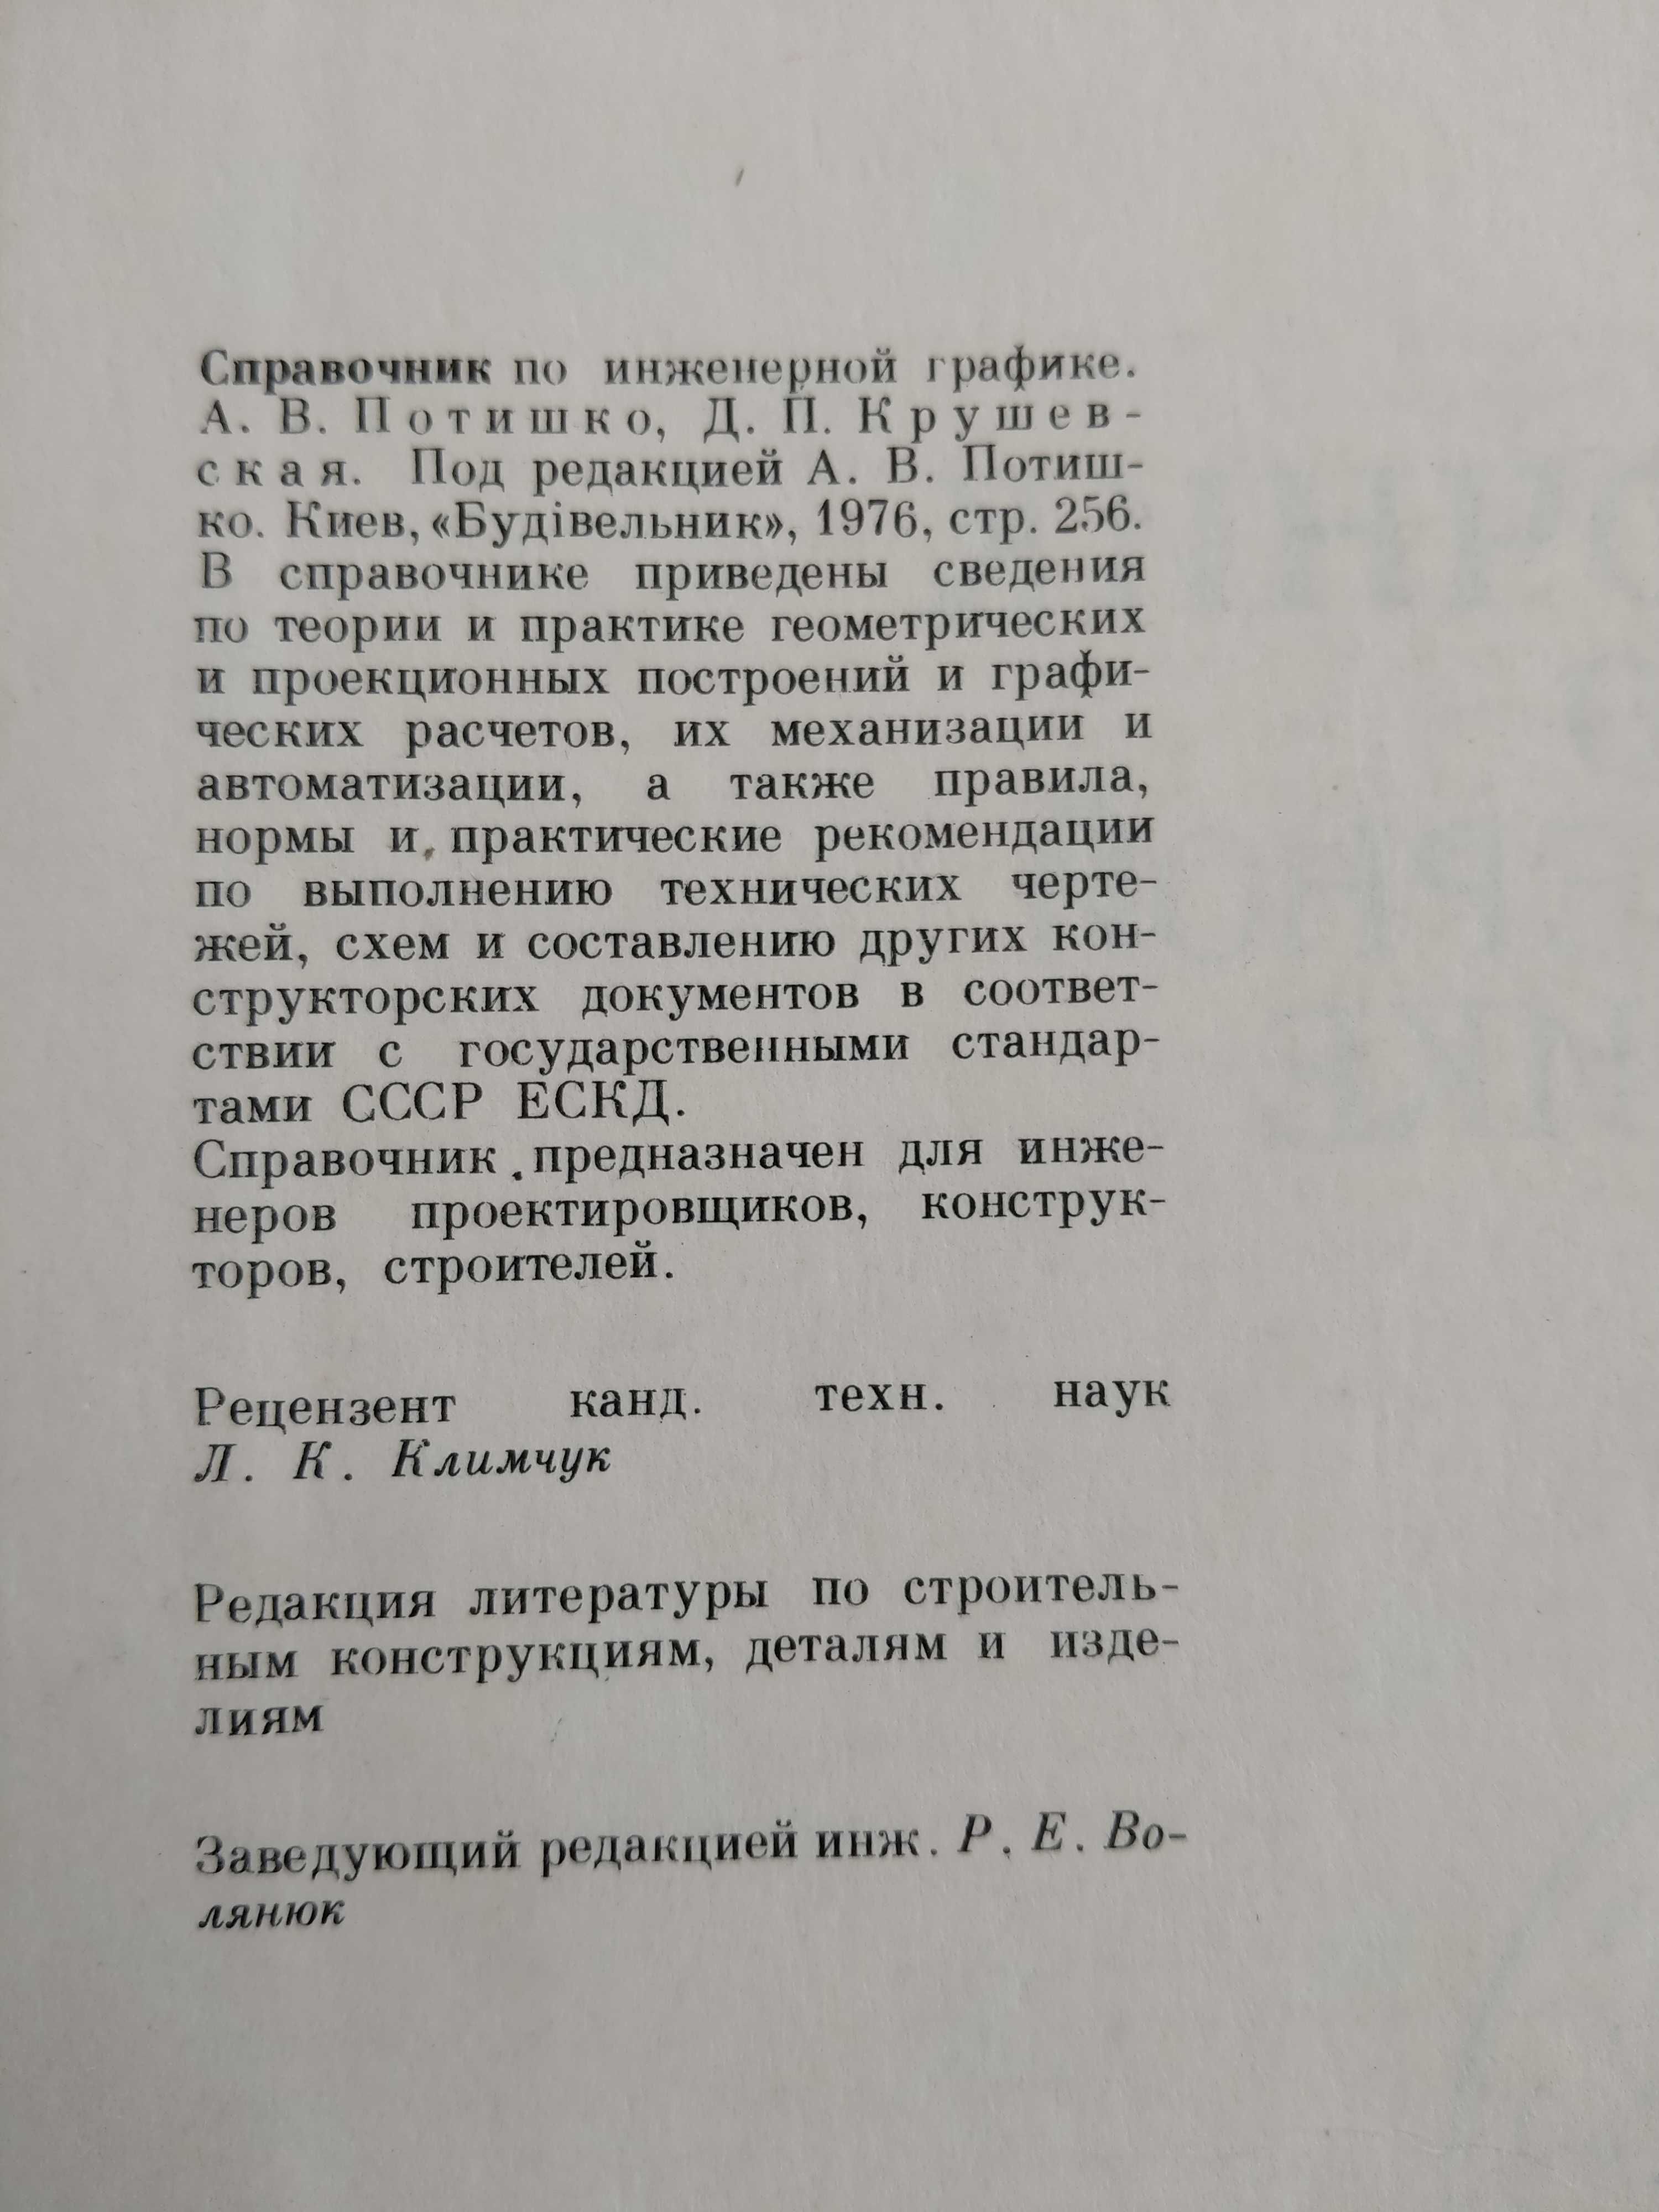 Справочник по инженерной графике Потишко А.В., Крушевская Д.П.